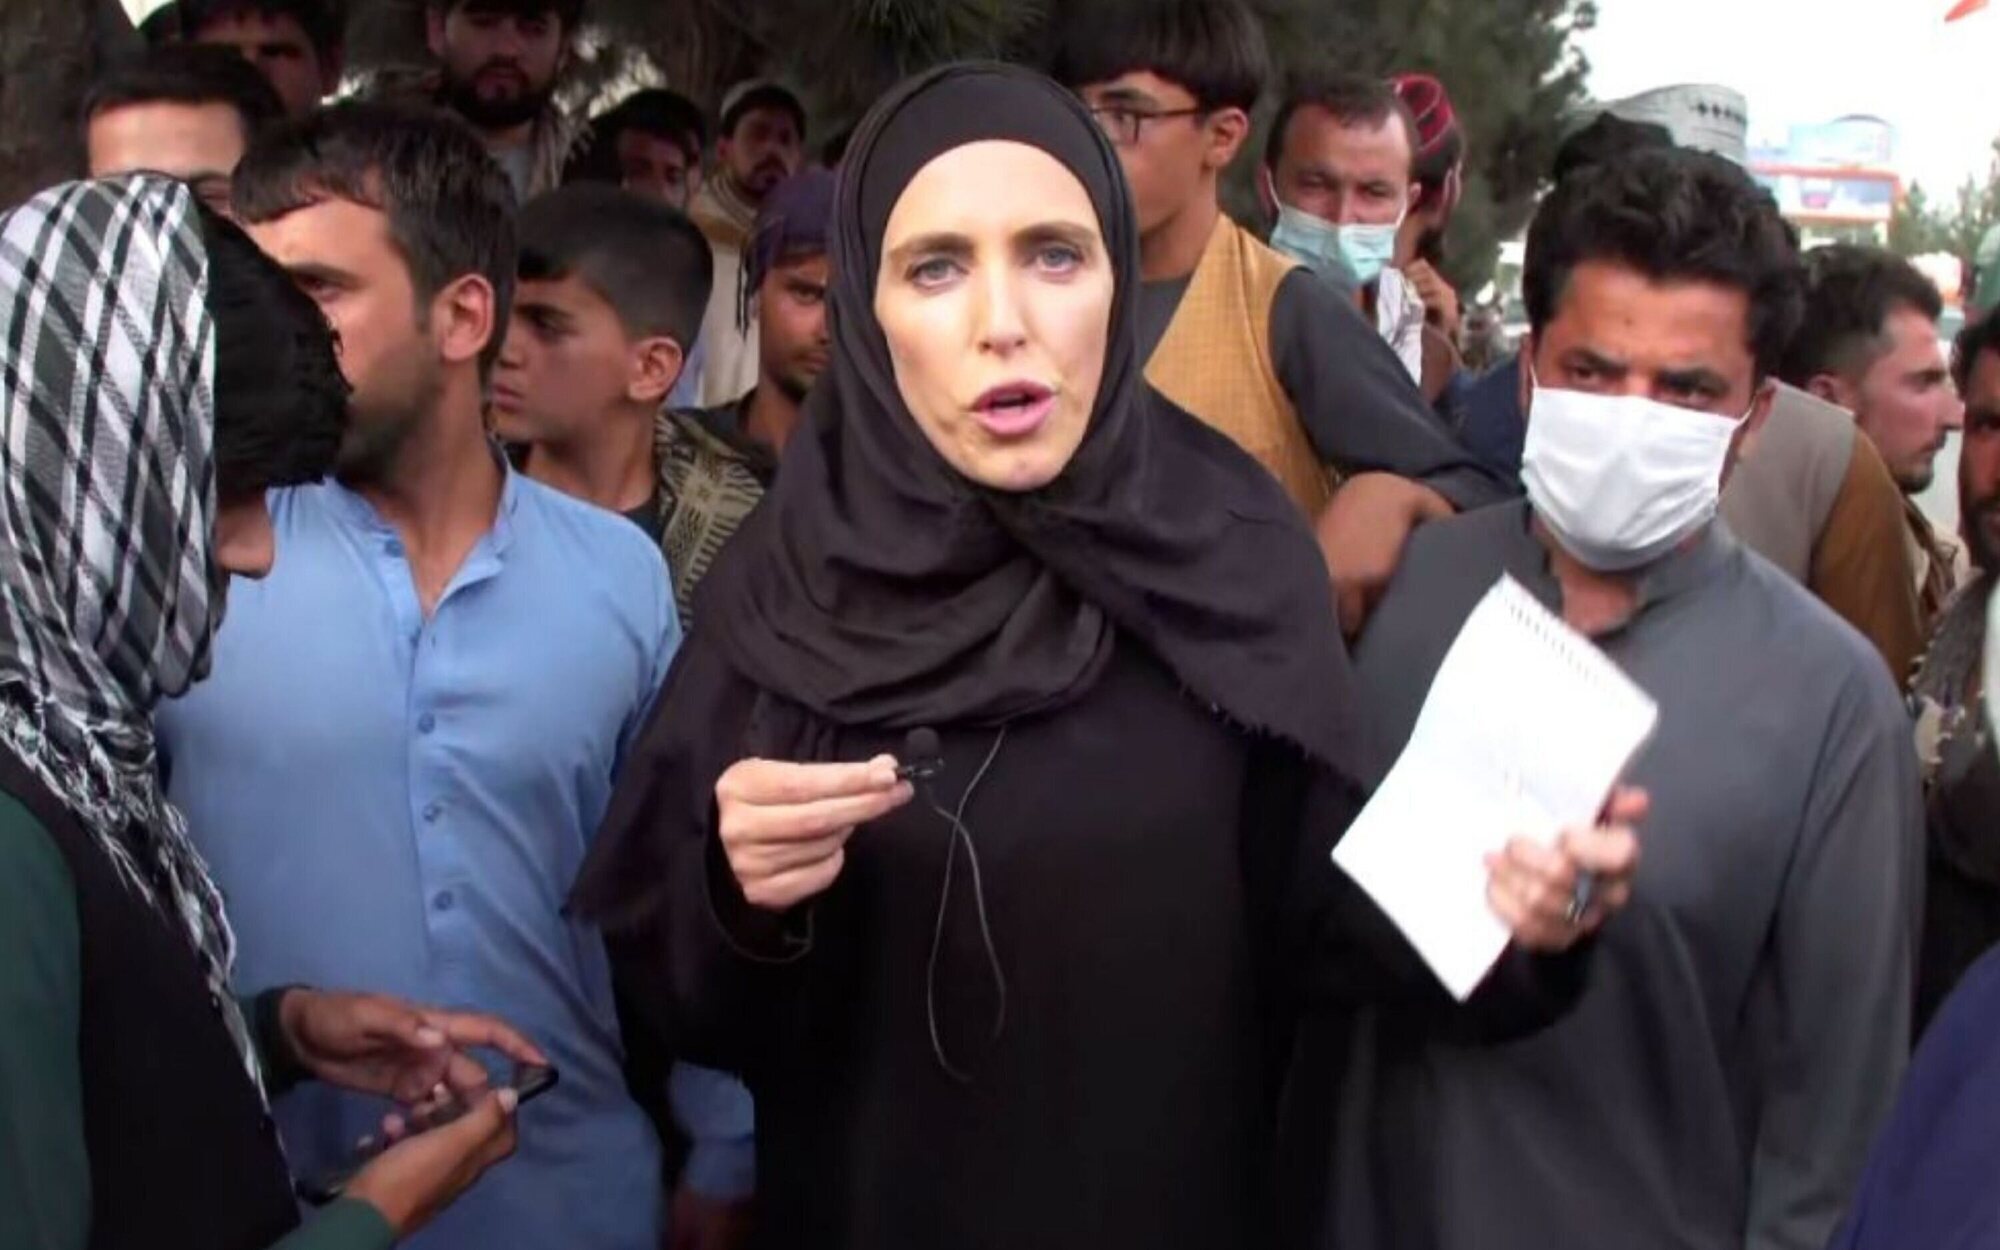 La reportera Clarissa Ward y el equipo de CNN abandonan Afganistán por la amenaza talibán